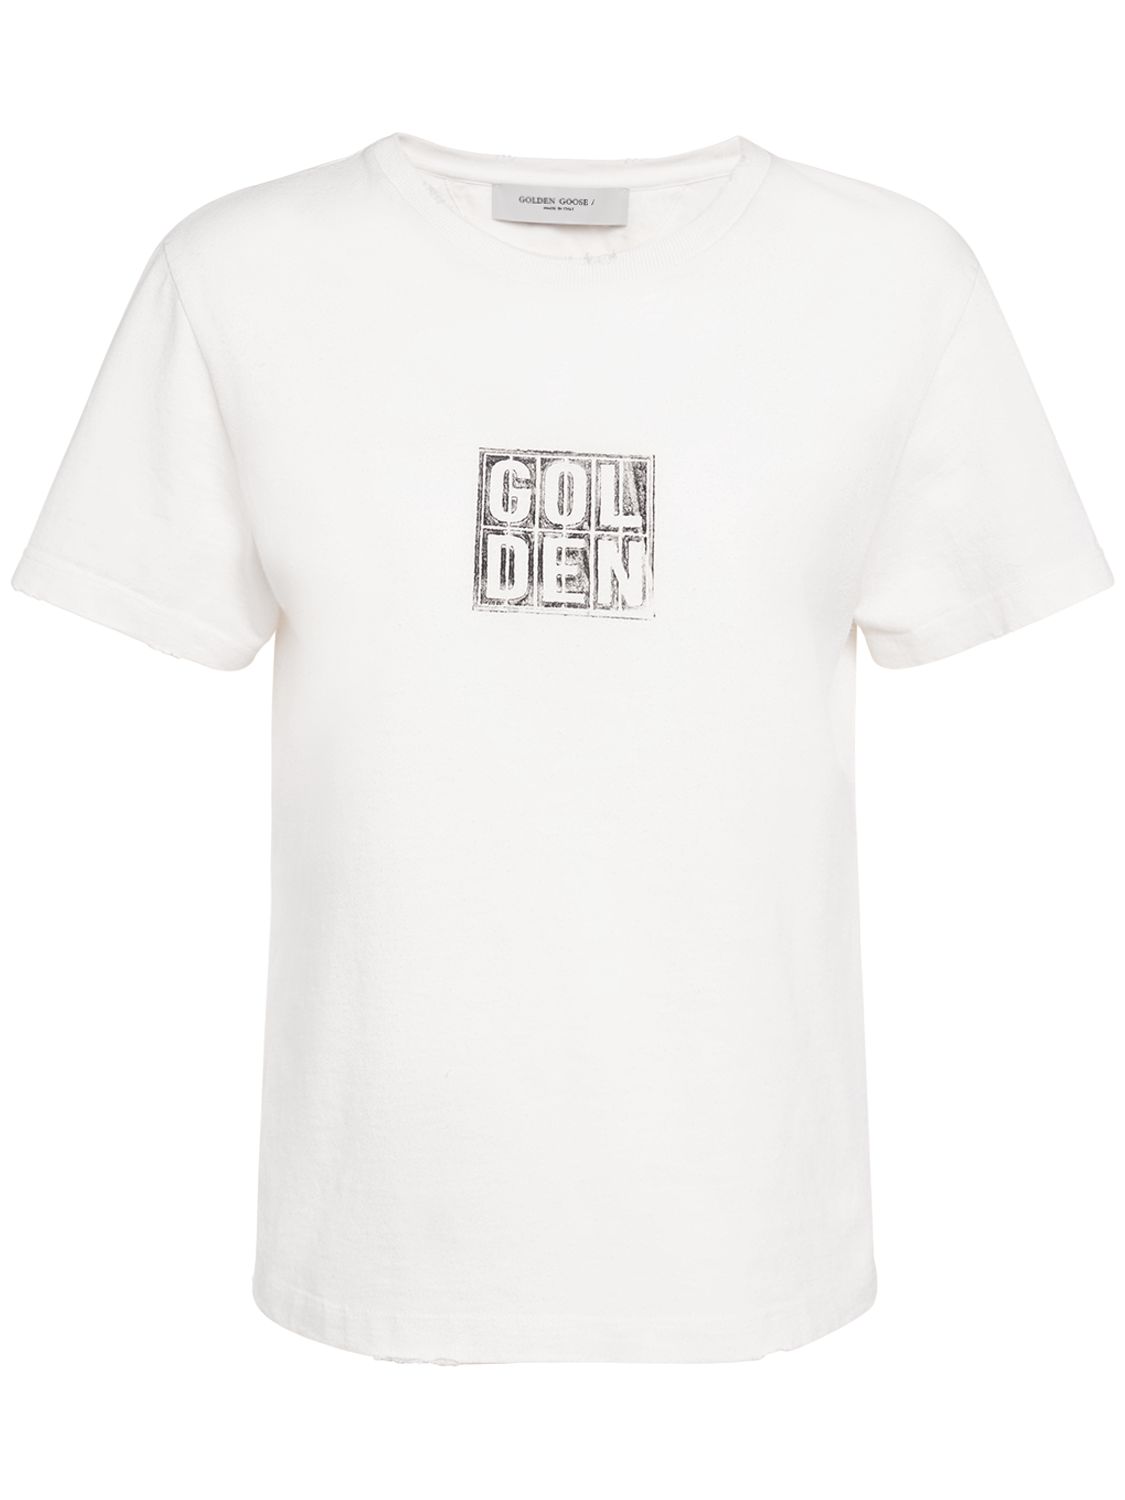 T-shirt En Coton Imprimé Journey - GOLDEN GOOSE - Modalova